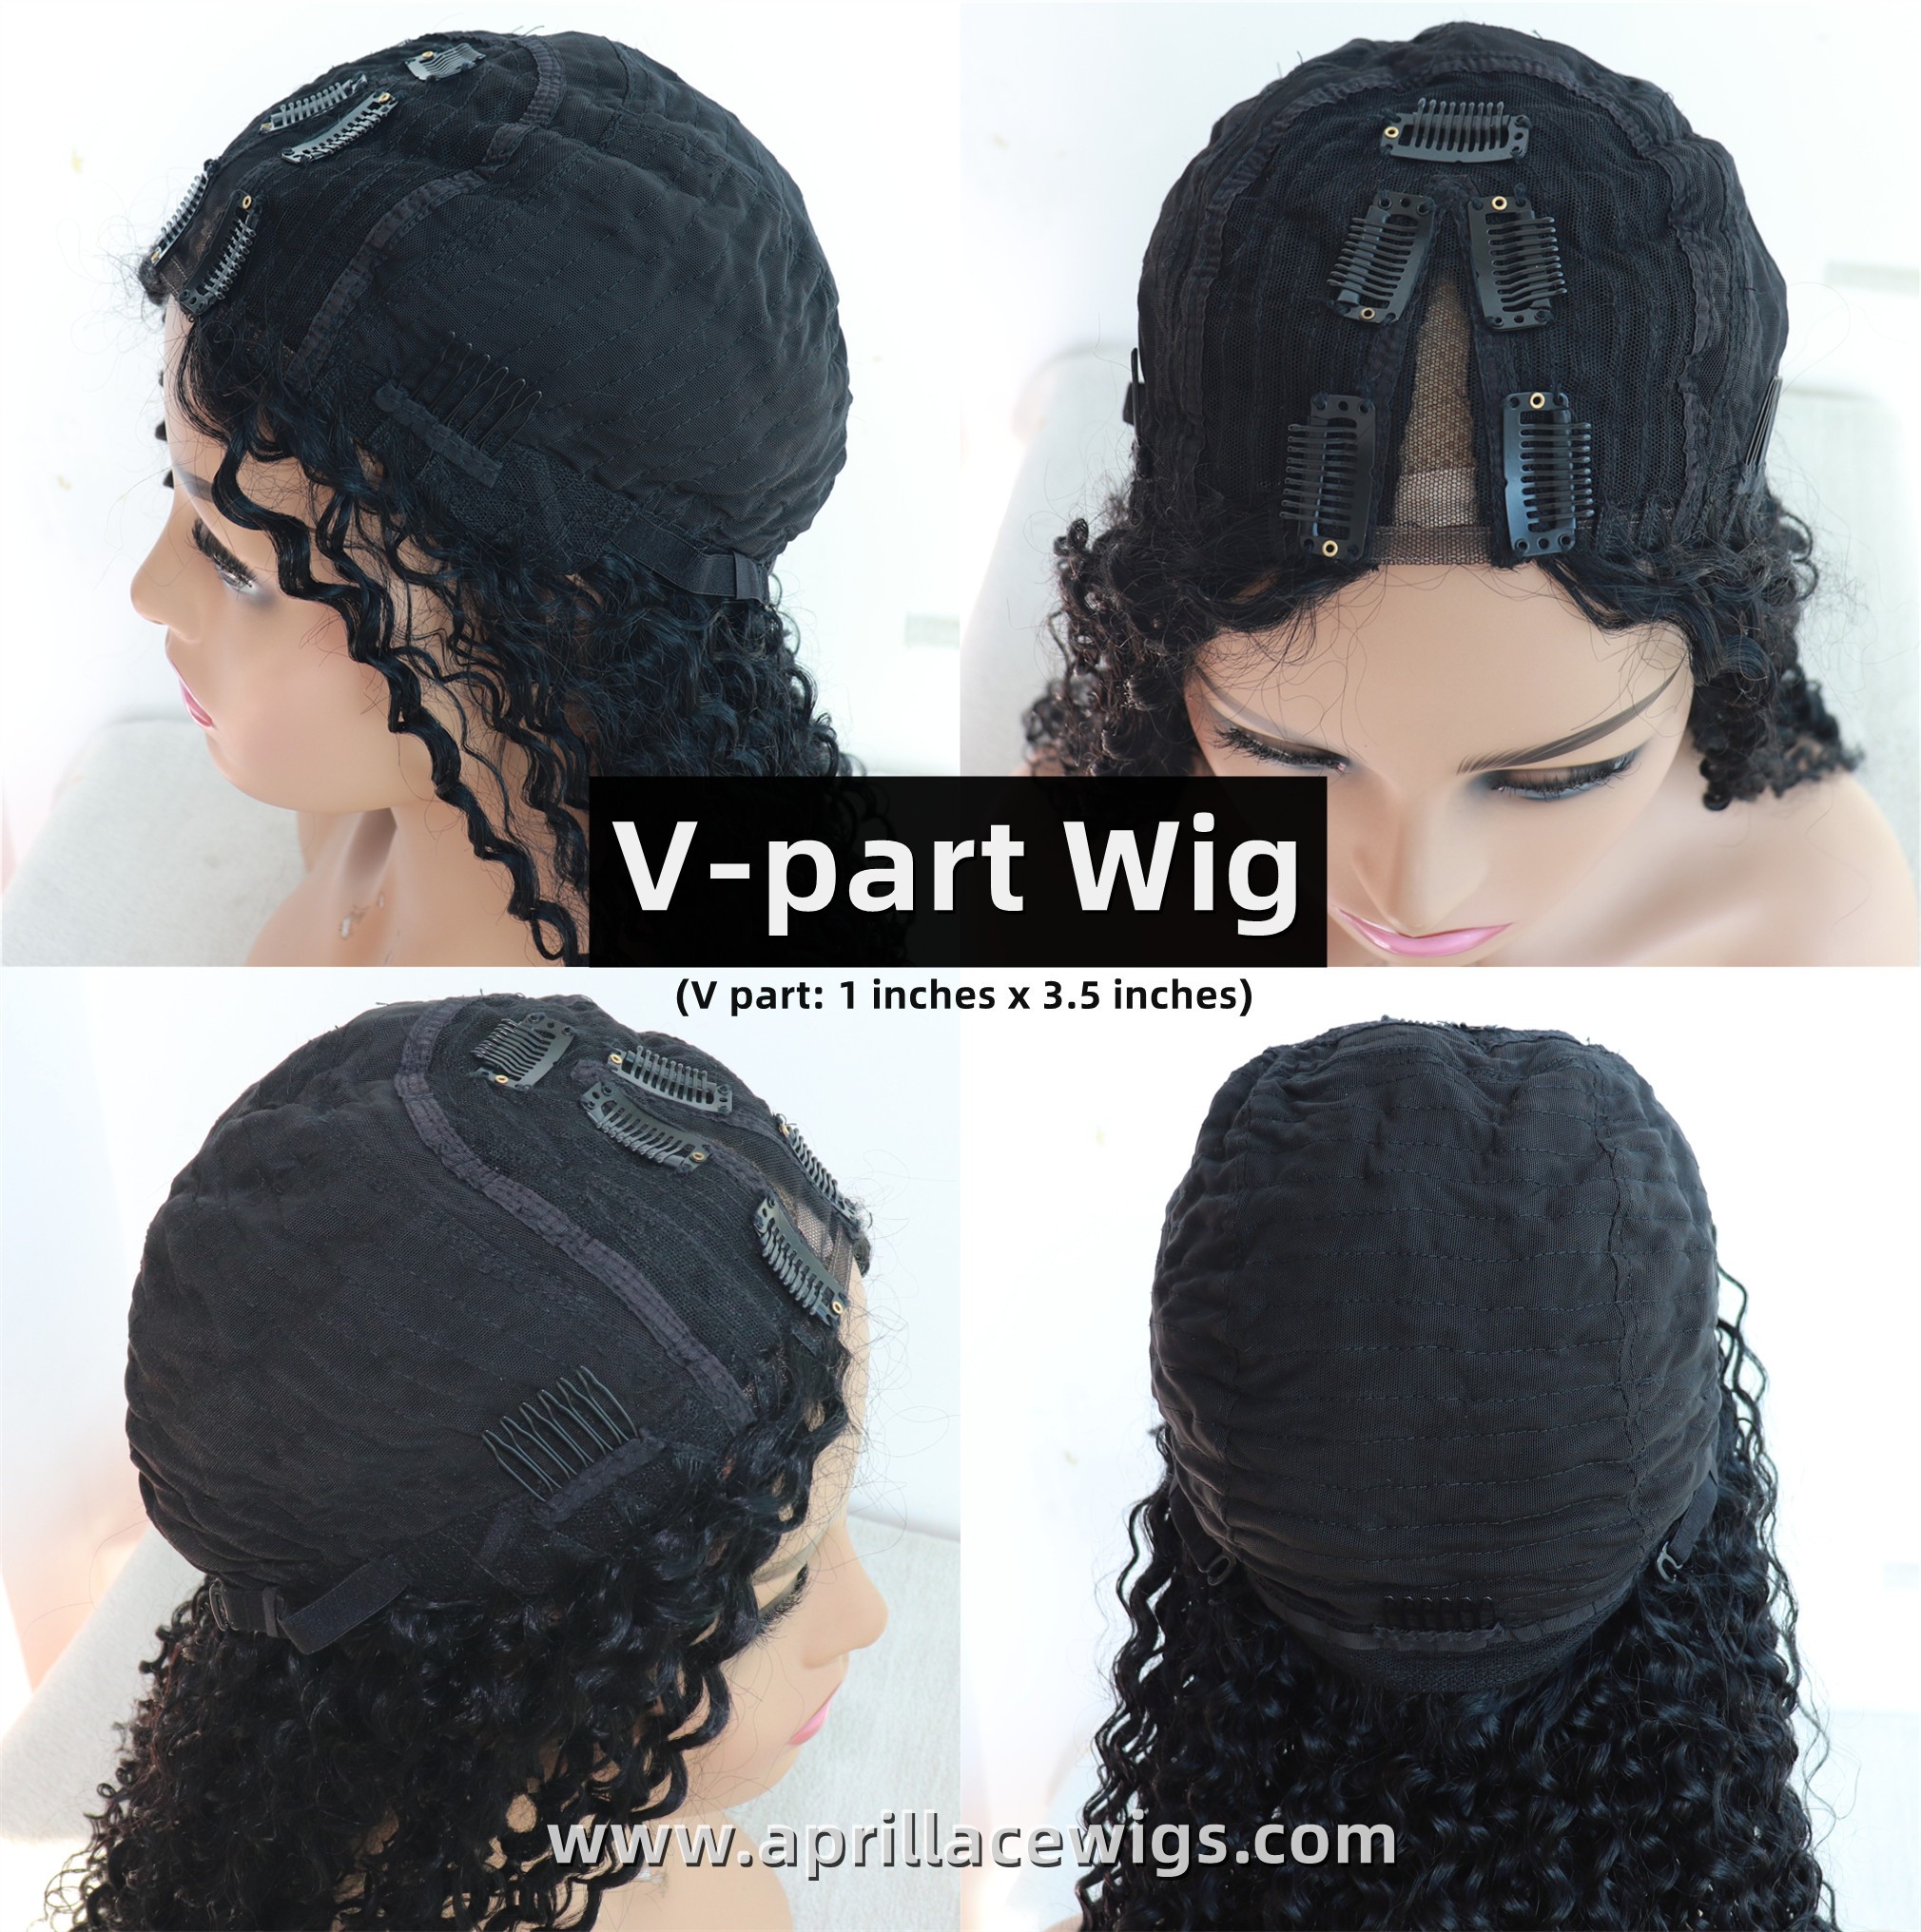 v-part wig